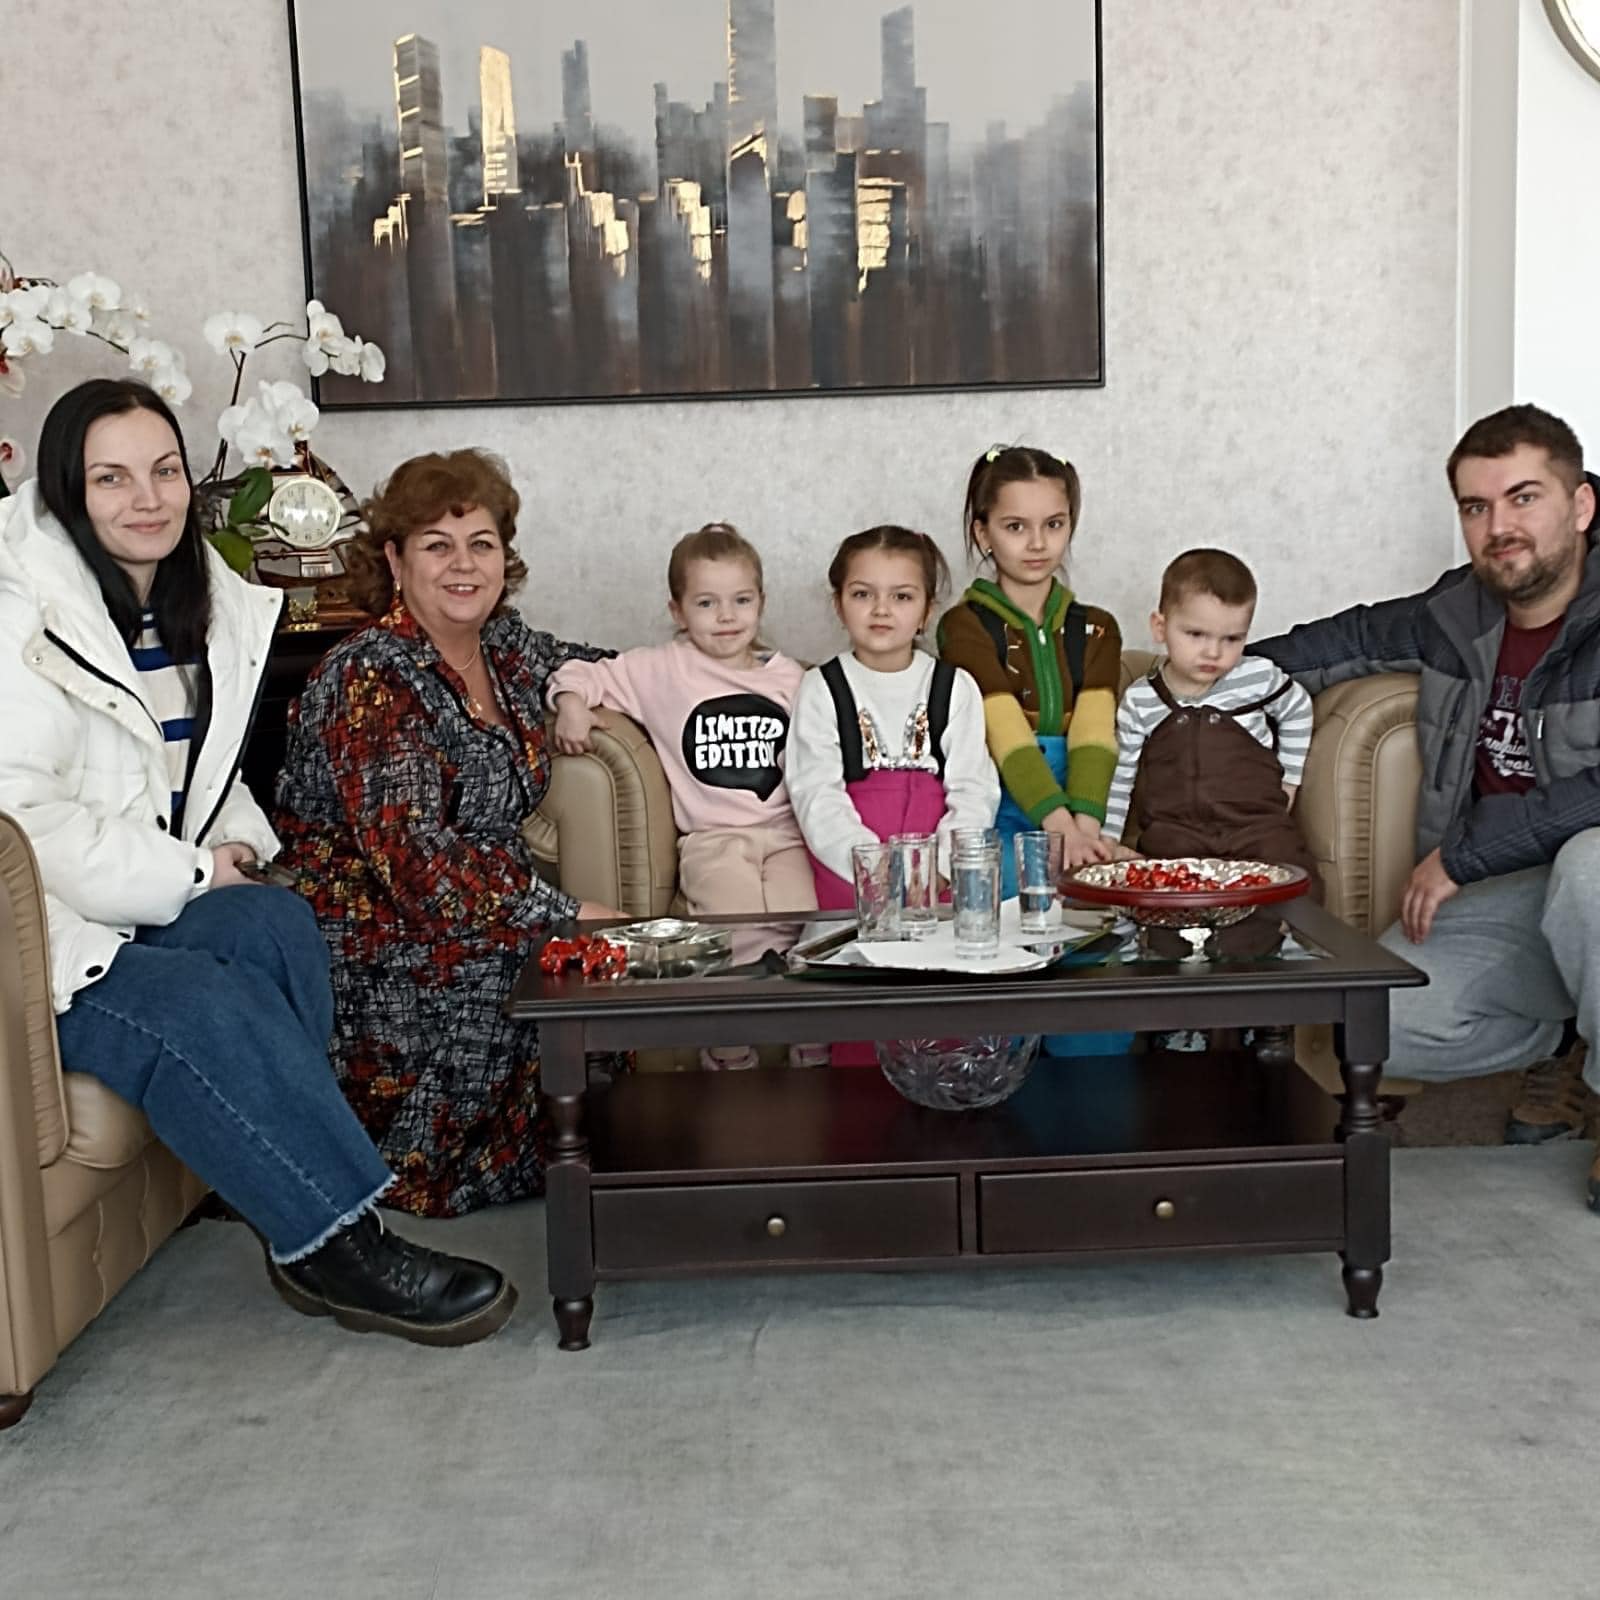 Comuna Grădina găzduiește refugiați din Ucraina. Primarul Gabriela Iacobici: "Pot sta cât vor la noi, până se termină războiul"